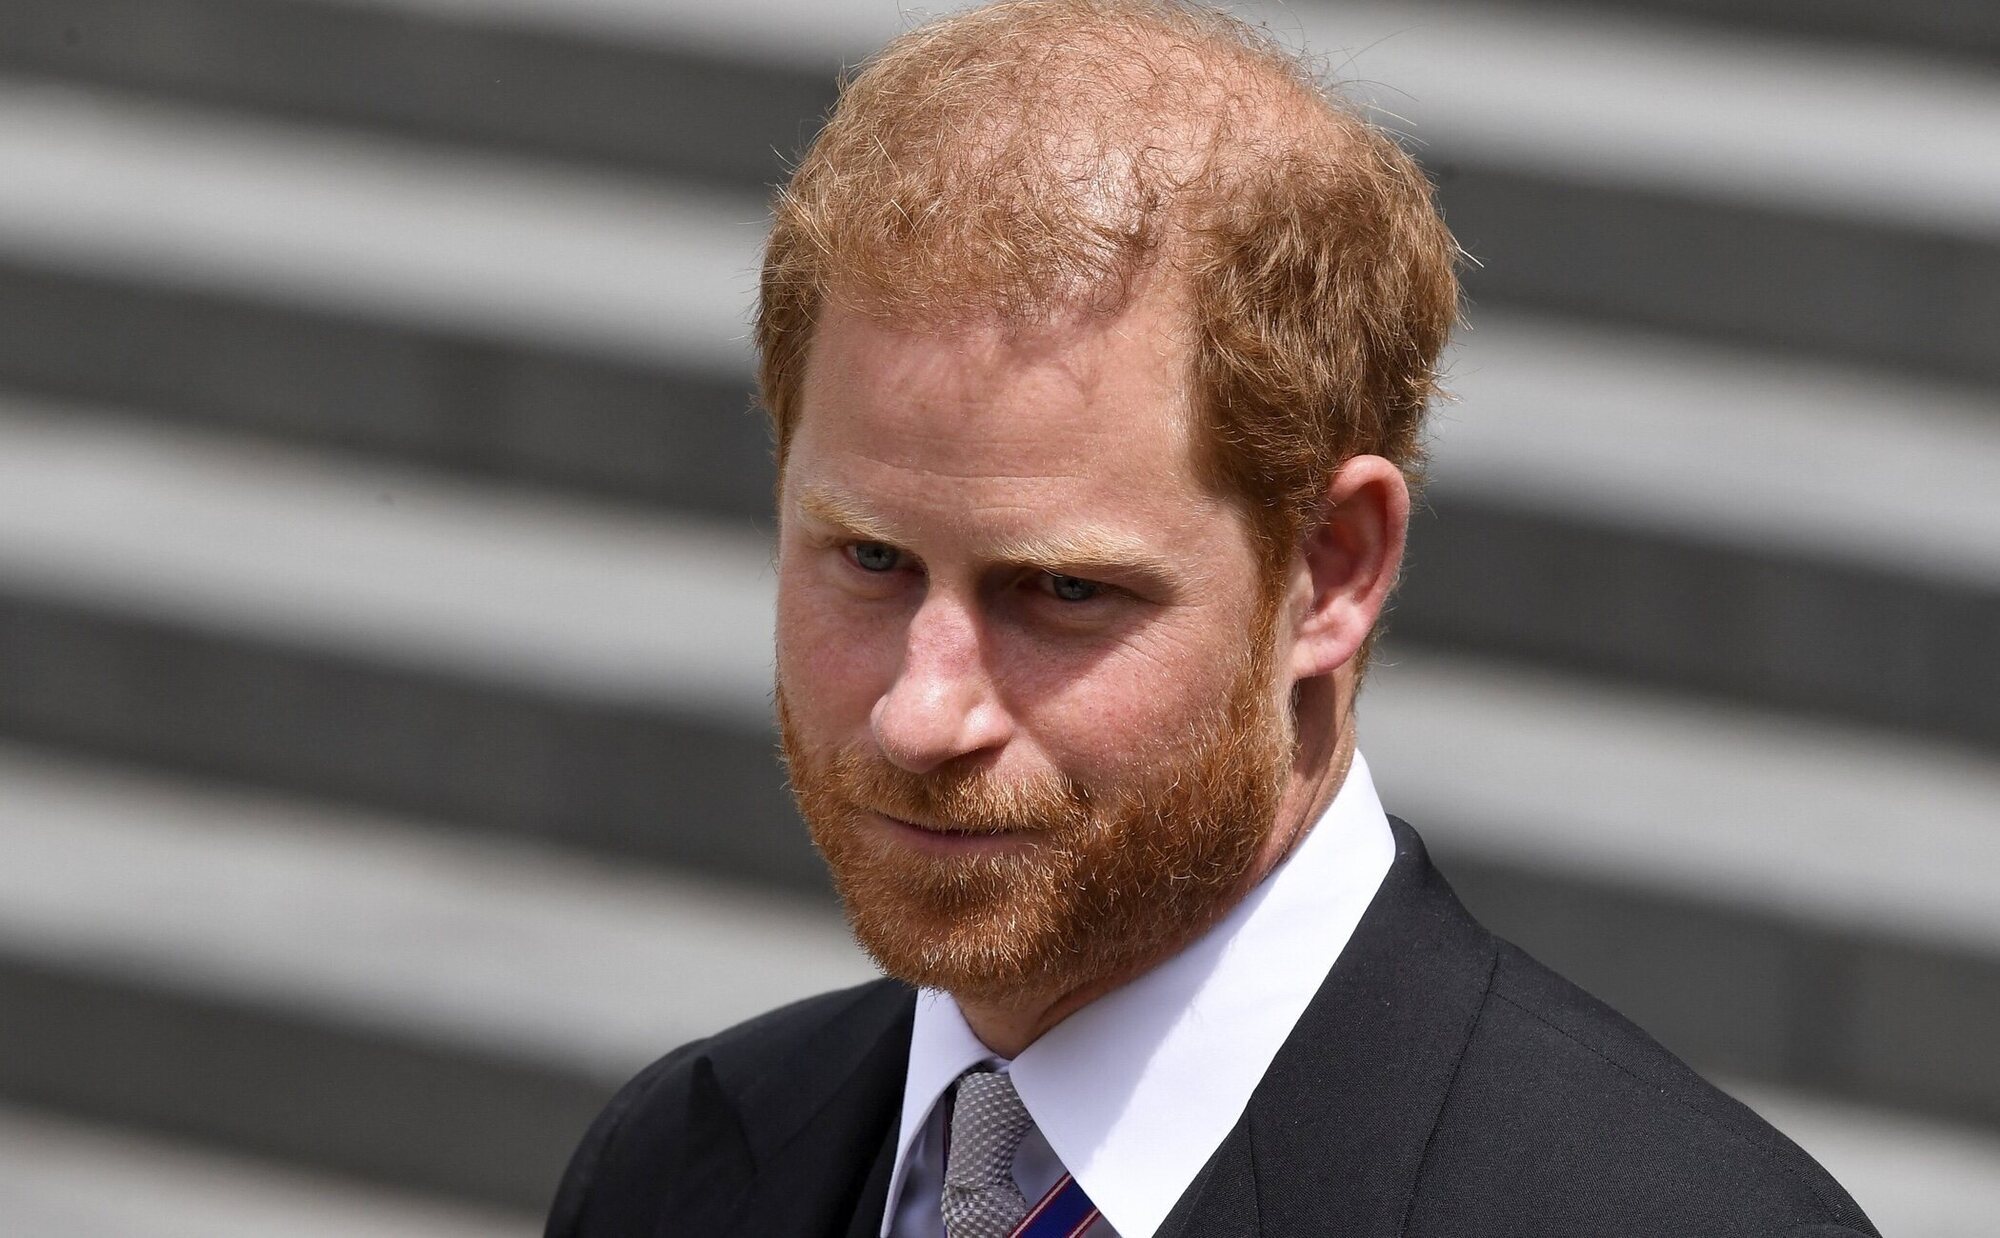 El Príncipe Harry volverá a Londres, pero evitará un reencuentro con su familia